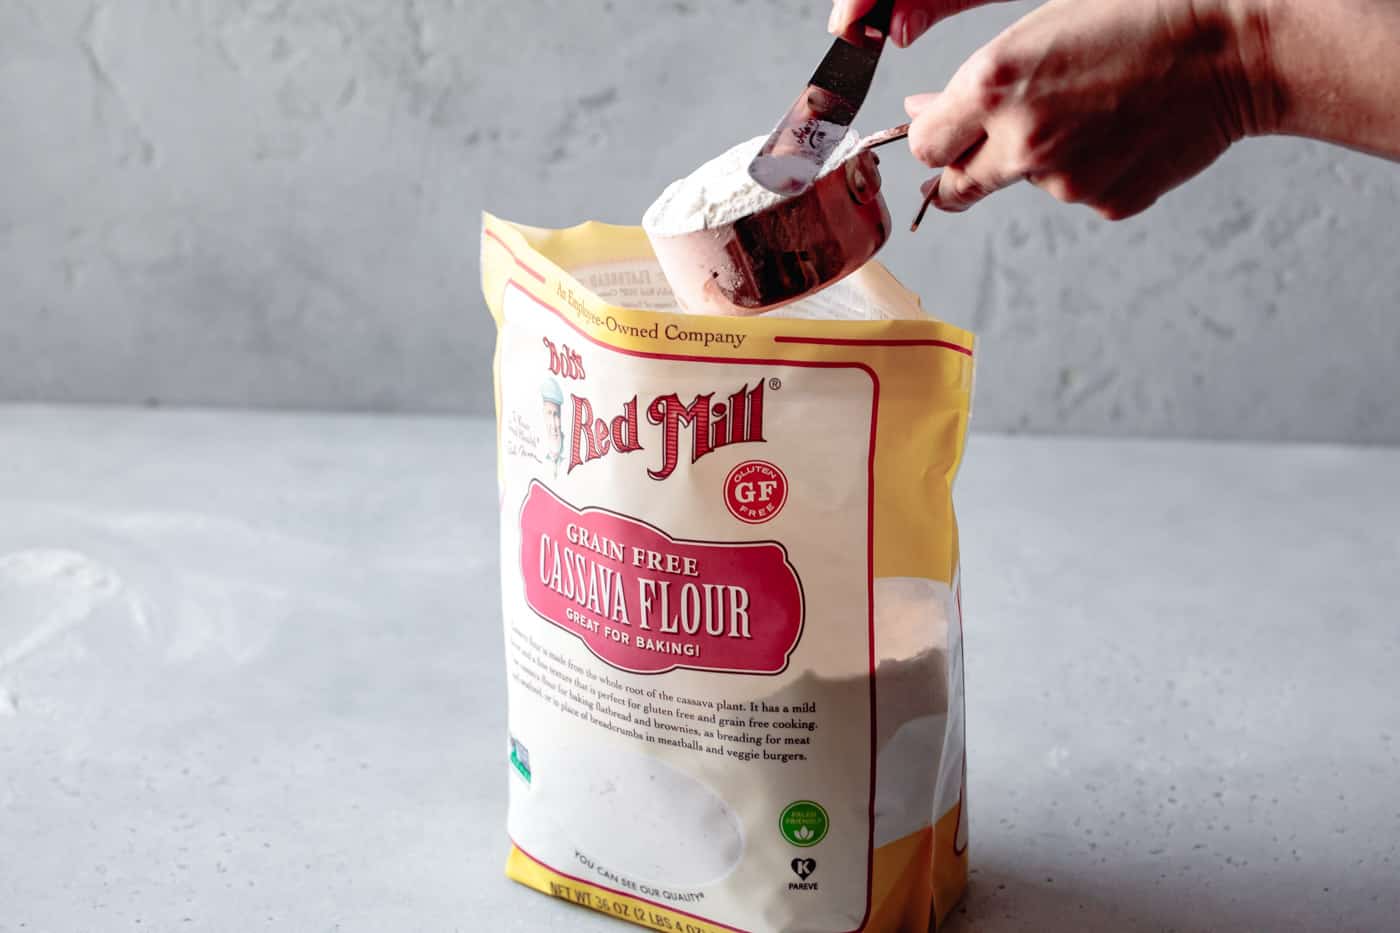 measuring cassava flour for grain-free pie crust recipe